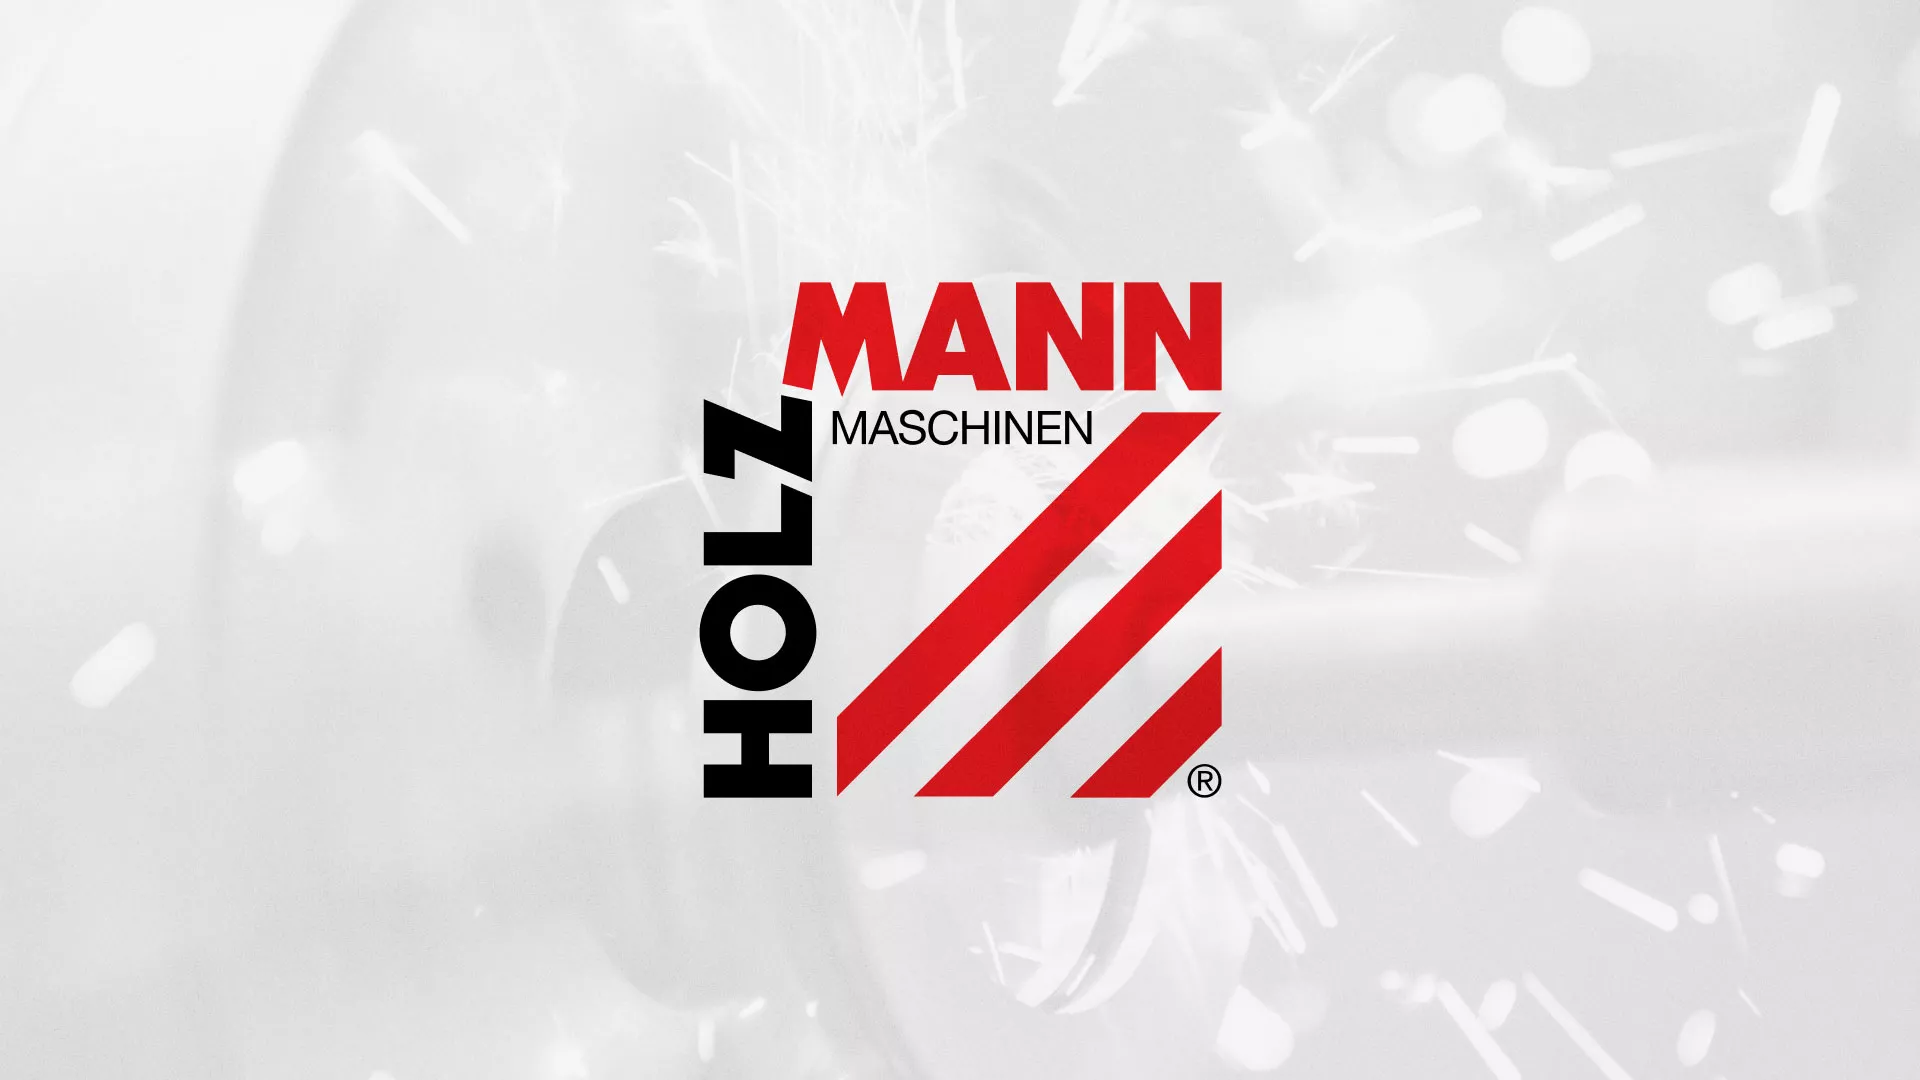 Создание сайта компании «HOLZMANN Maschinen GmbH» в Инсаре